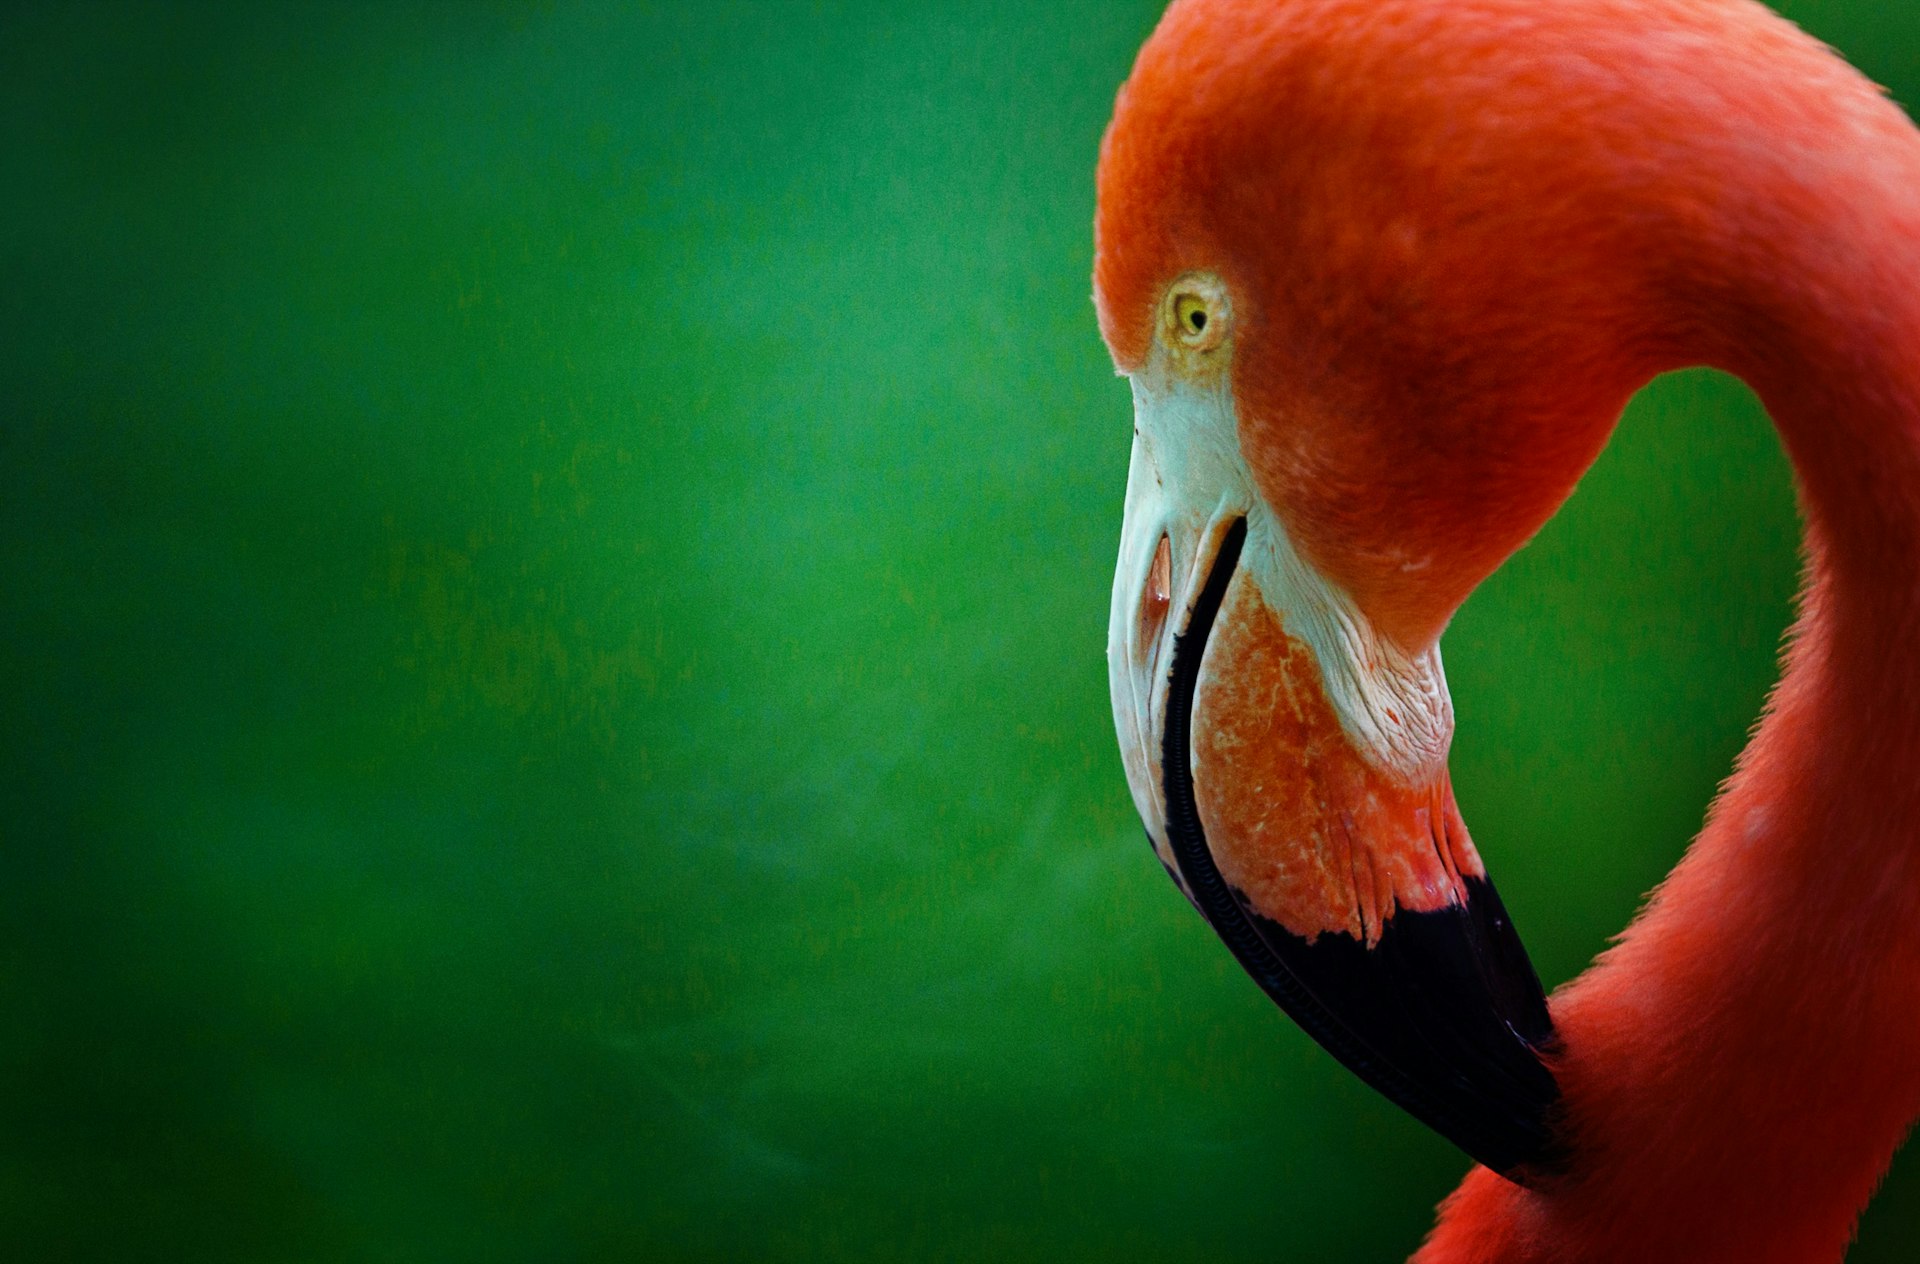 En ljust rosa flamingos huvud sticker ut på en lysande grön bakgrund